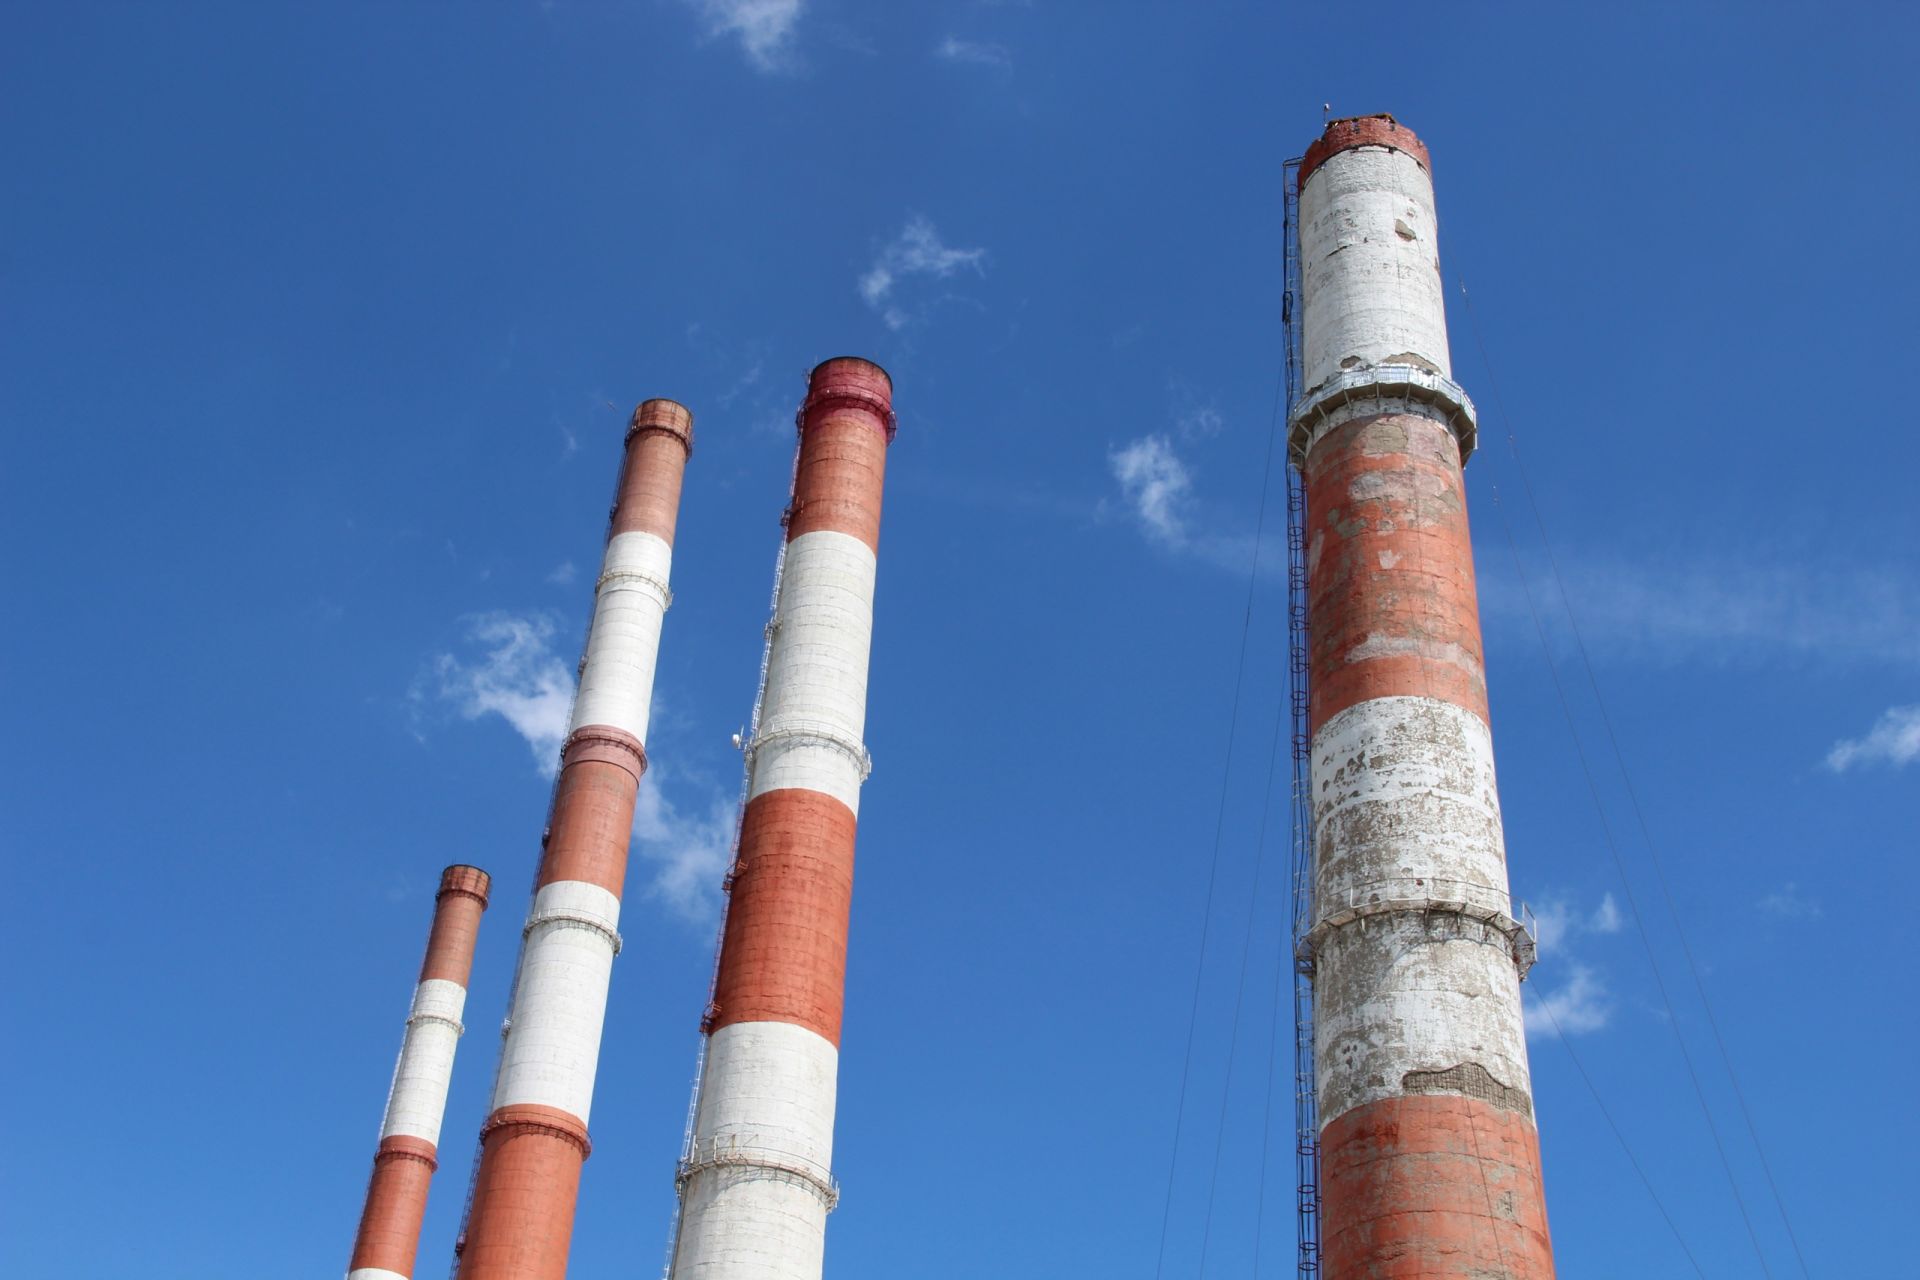 Демонтаж дымовой трубы Заинской ГРЭС: утилизировано 547 тонн стройматериала